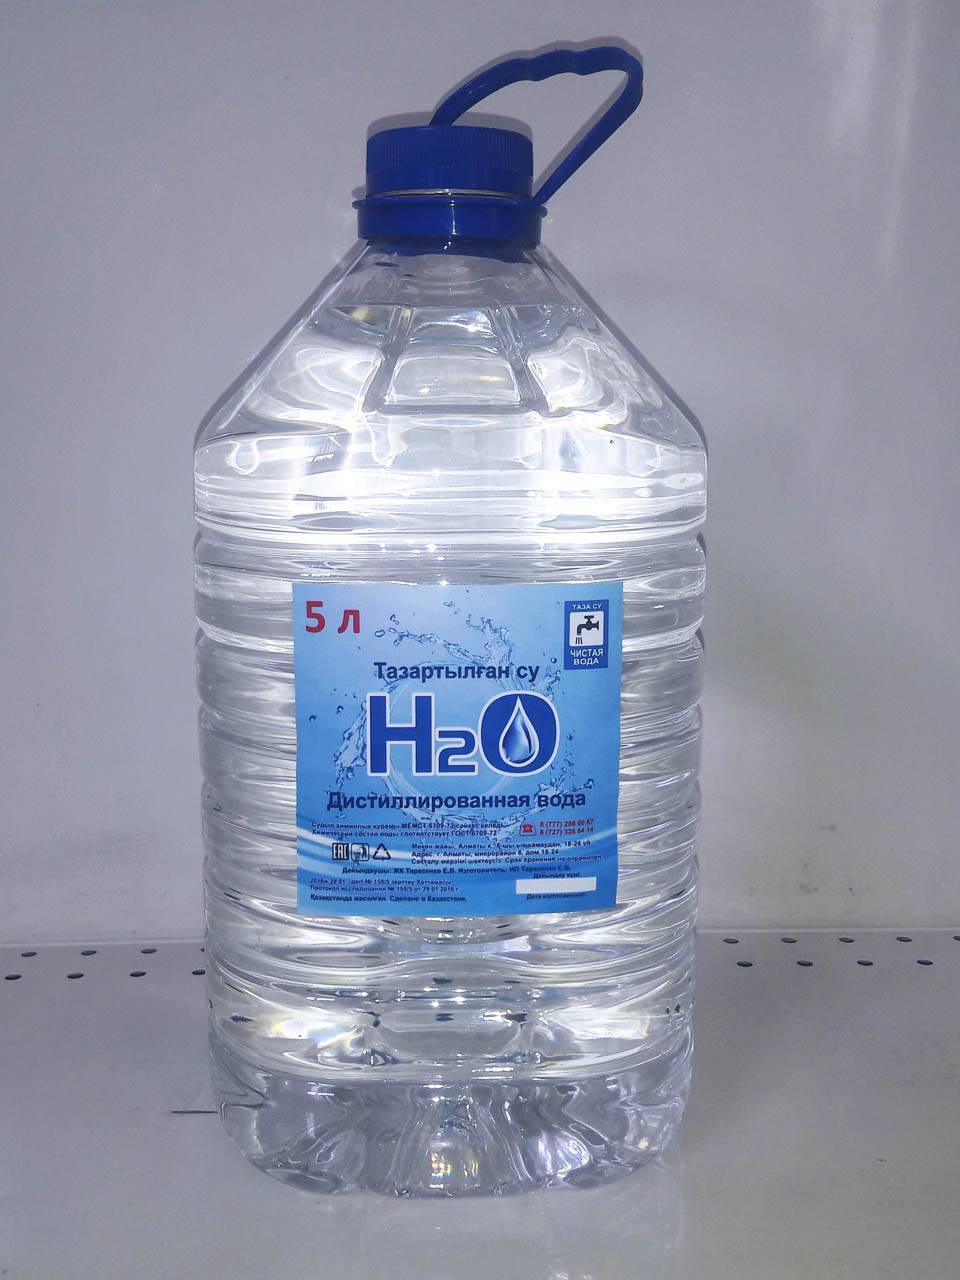 Безопасна ли дистиллированная вода для питья